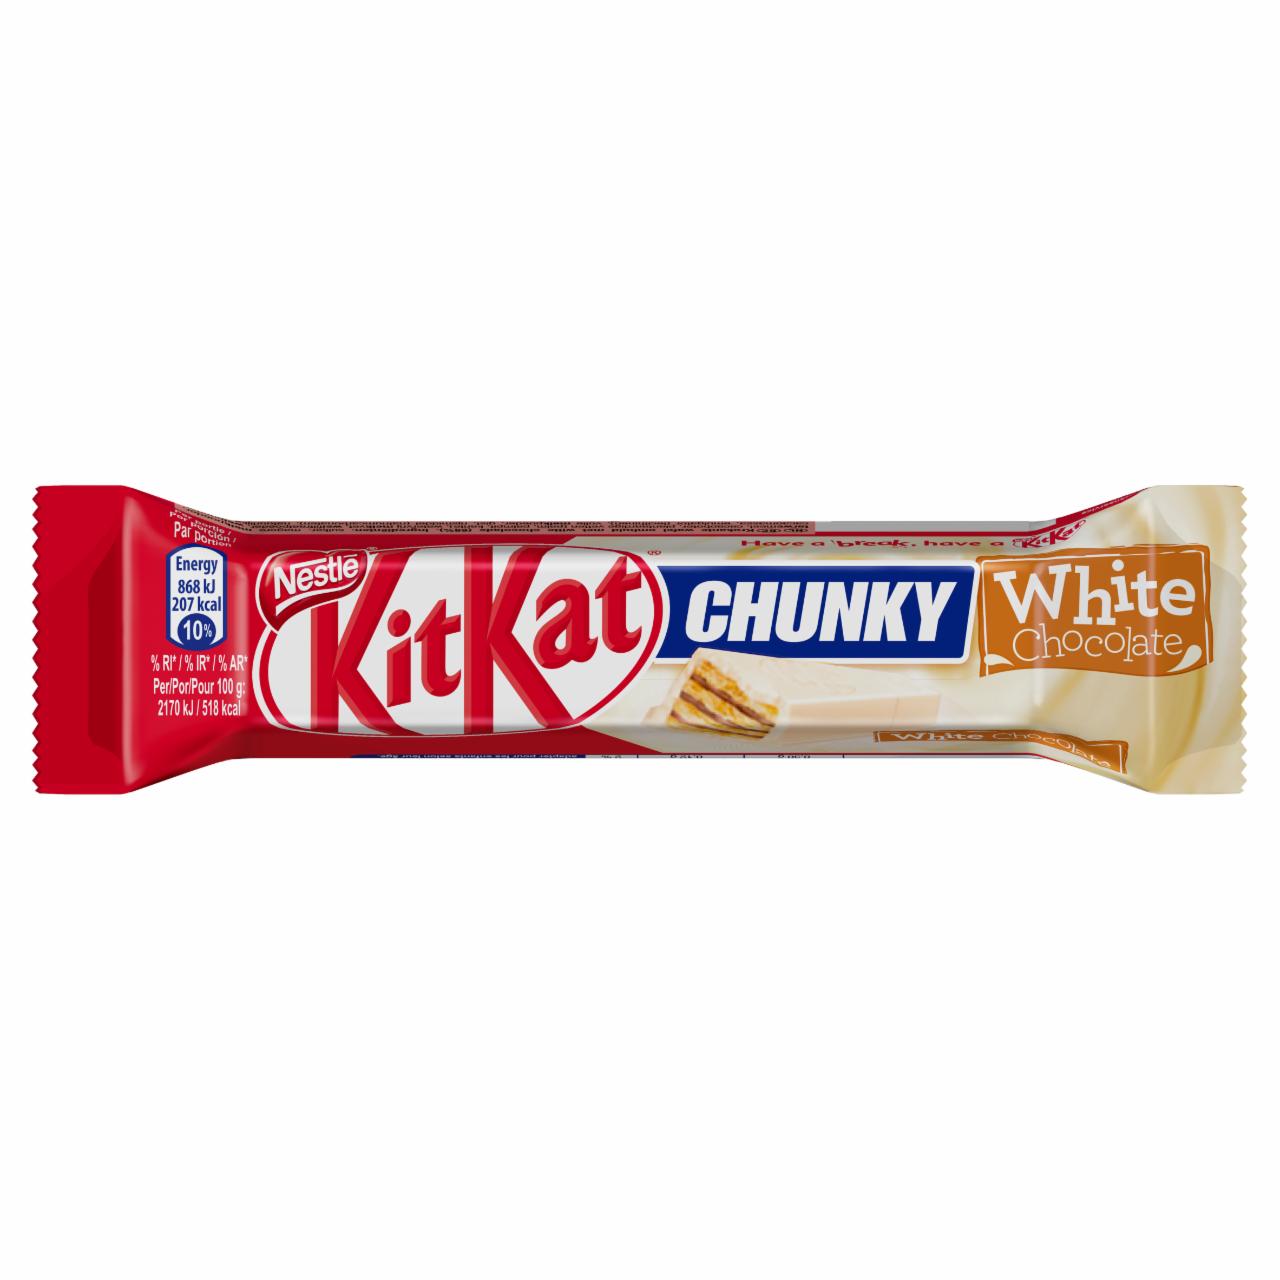 Zdjęcia - KitKat Chunky Paluszek waflowy pokryty białą polewą 40 g